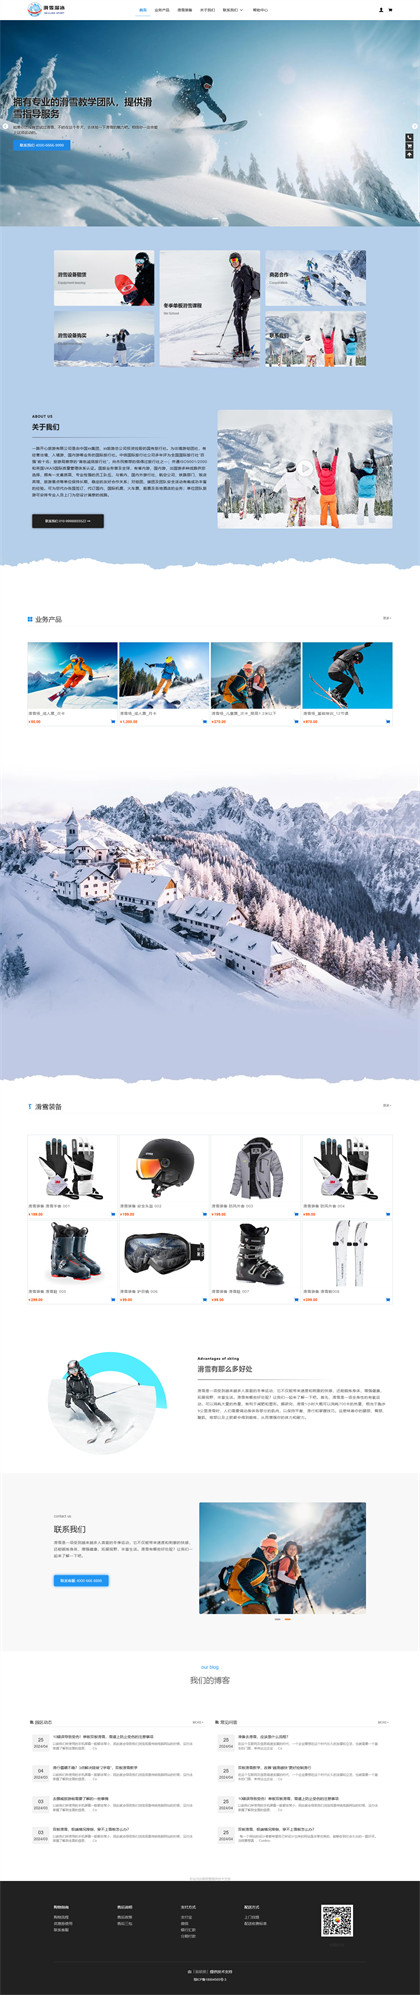 滑雪场-溜冰场-滑雪培训-户外滑雪场-风景区-商城网站模板网站模板图片